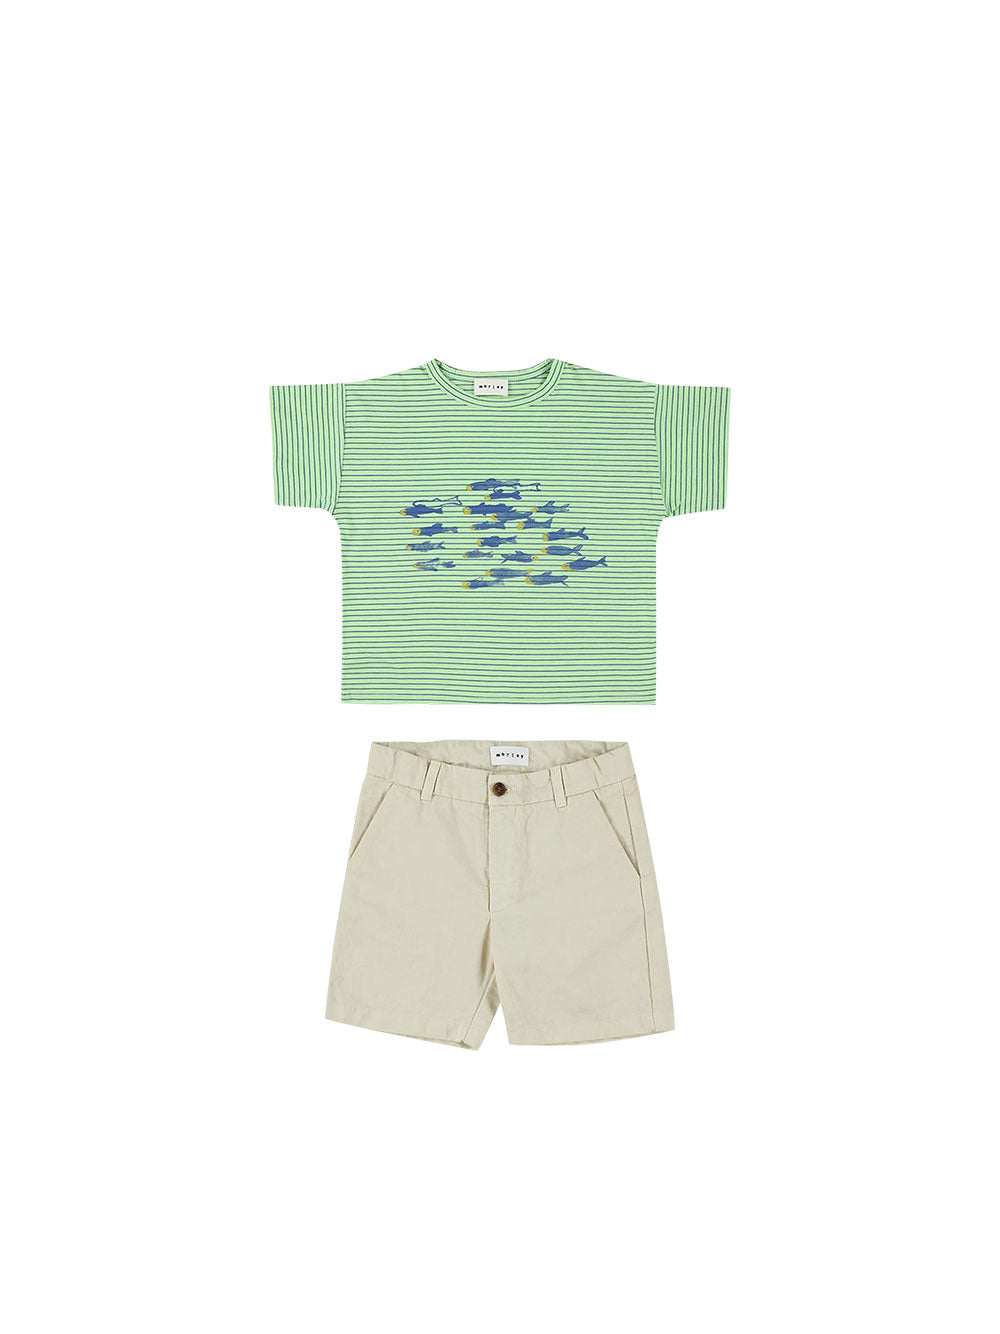 Ushi Fish Green T-shirt